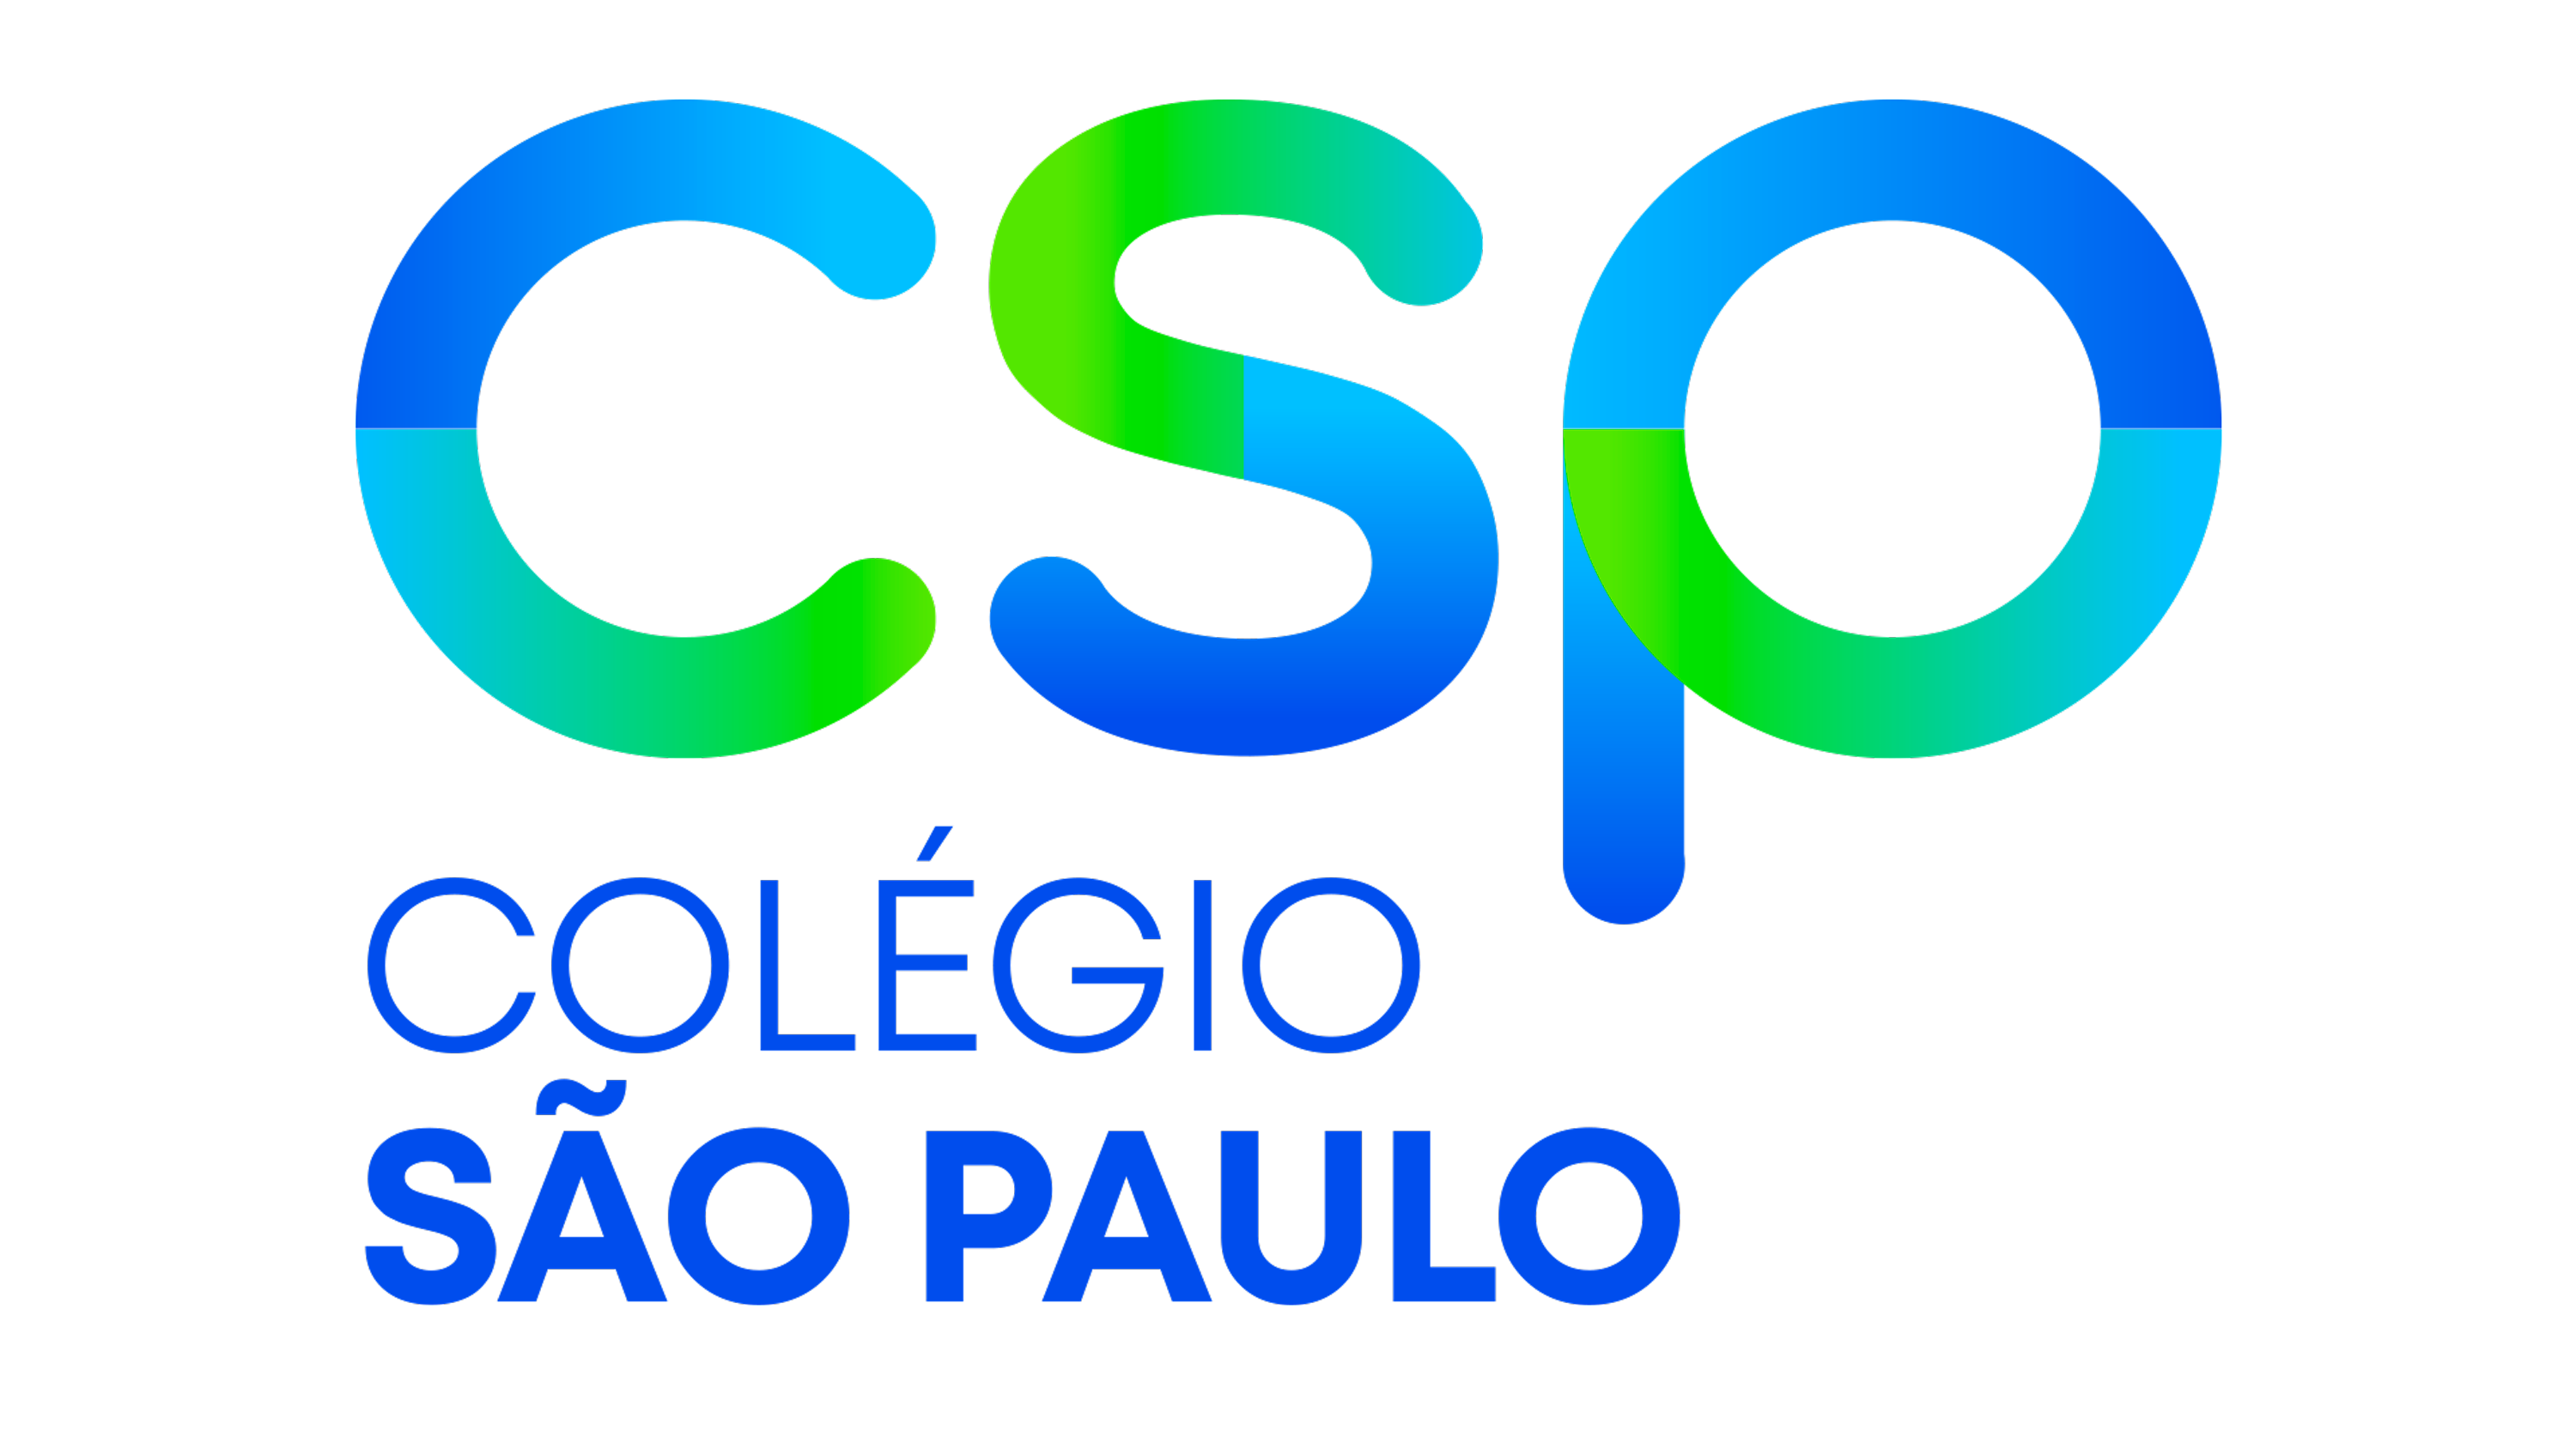 O Colégio O Mundo da Criança e o Colégio São Paulo estão presentes na sociedade ao longo de  45 anos construindo história no cenário educacional com muita seriedade e competência